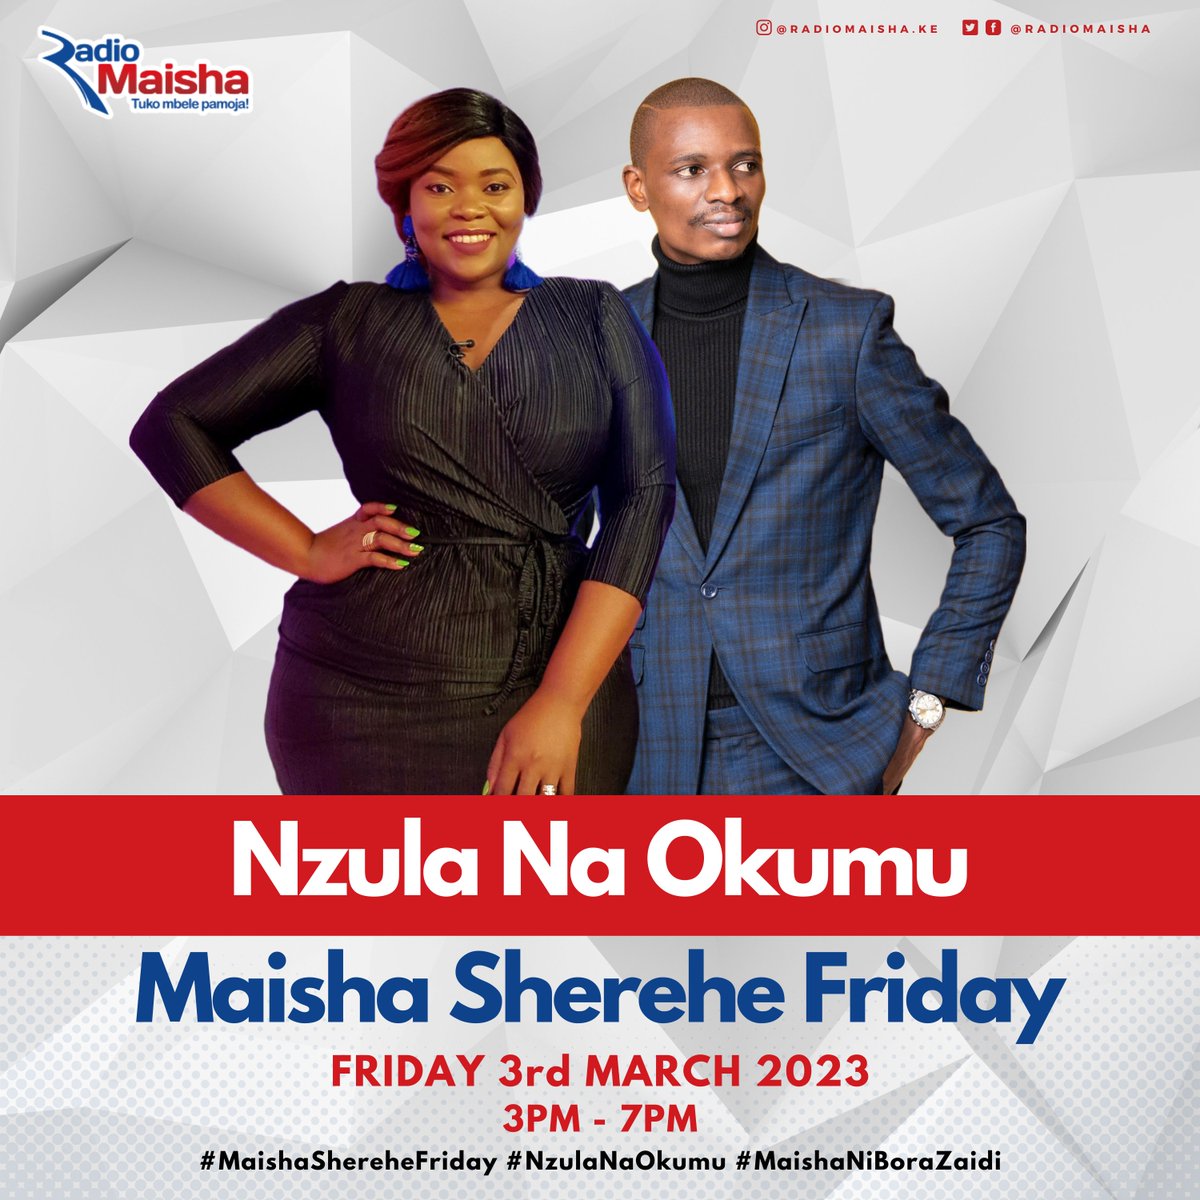 Maisha Sherehe Friday is ON!! It's time to kick start the weekend with @NzulaMakosi, @wyclif_okumu na @DJYOUNGKENYA from 3pm - 7pm. #MaishaShereheFriday #MaishaNiBoraZaidi #NzulaNaOkumu #RadioZaidiYaRadio